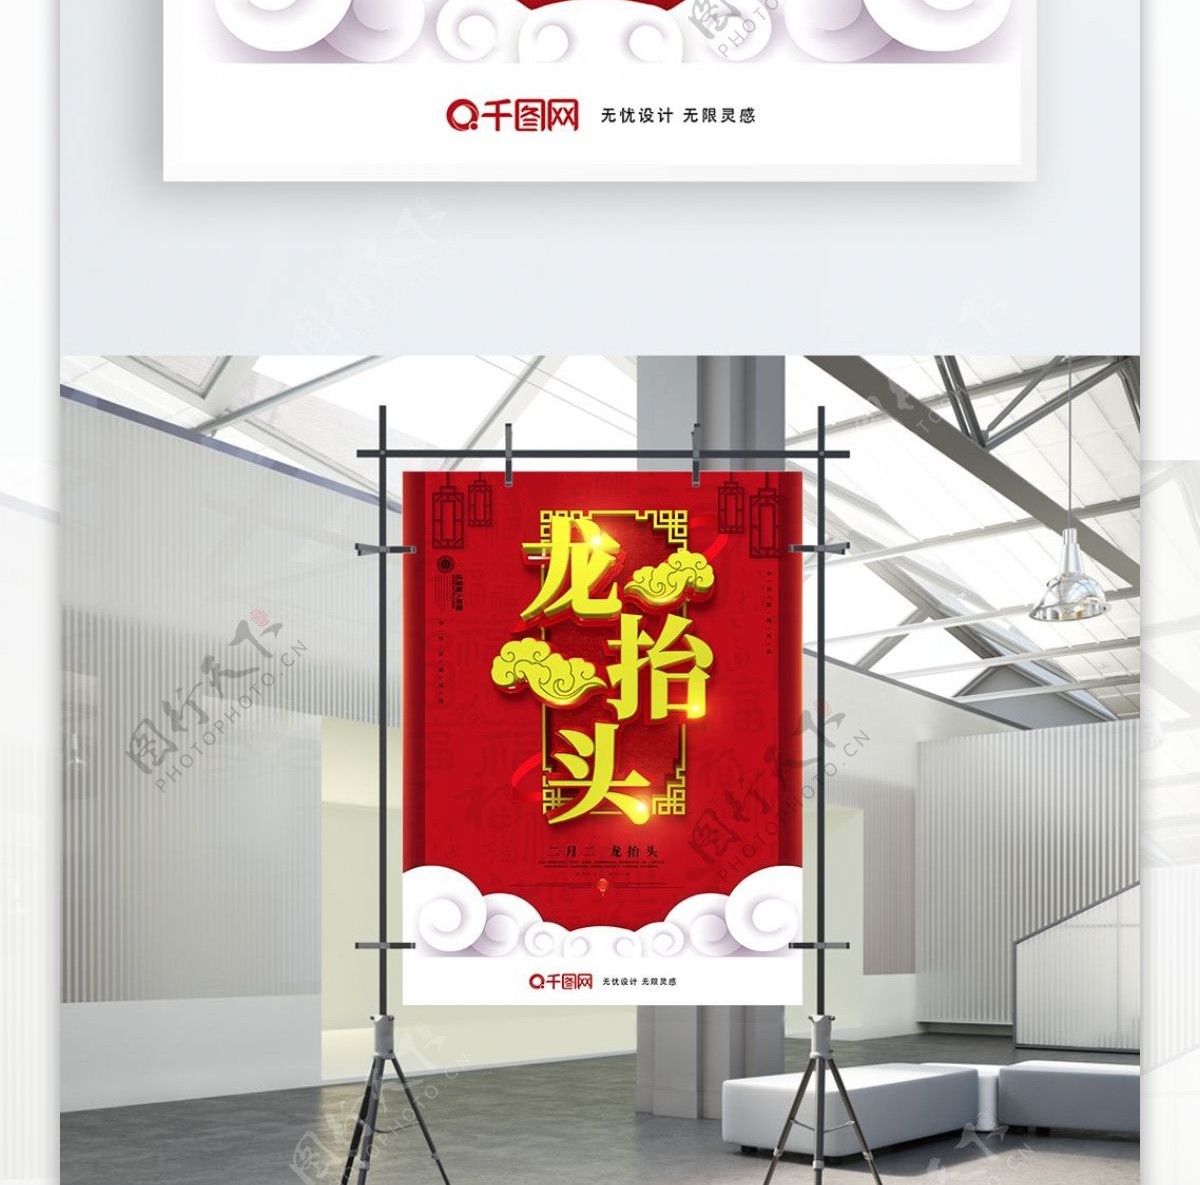 创意红色中国风二月二龙抬头节日宣传海报